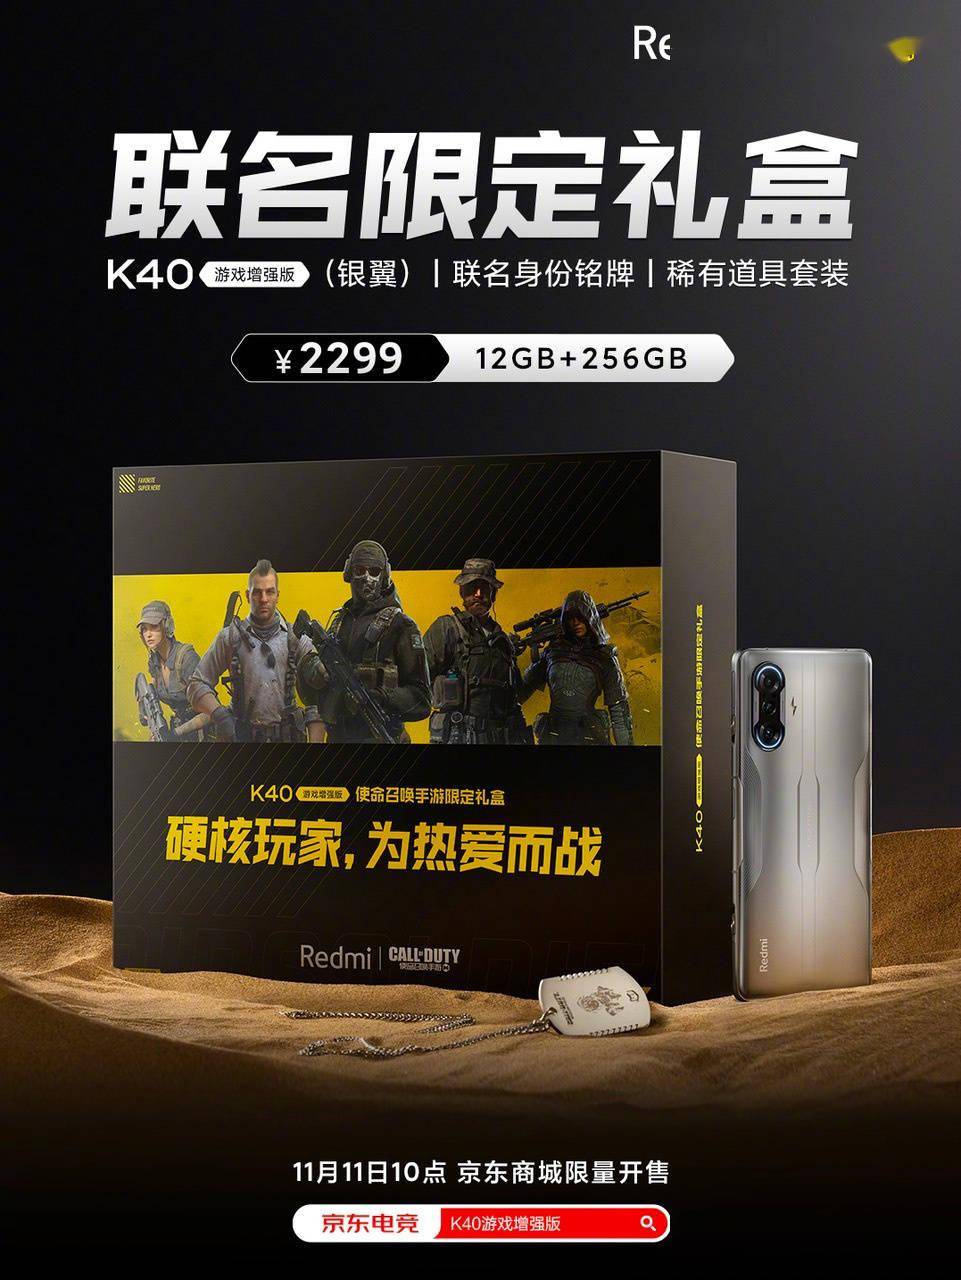 增强版|Redmi K40 游戏增强版推《使命召唤手游》联名礼盒，依然 2299 元